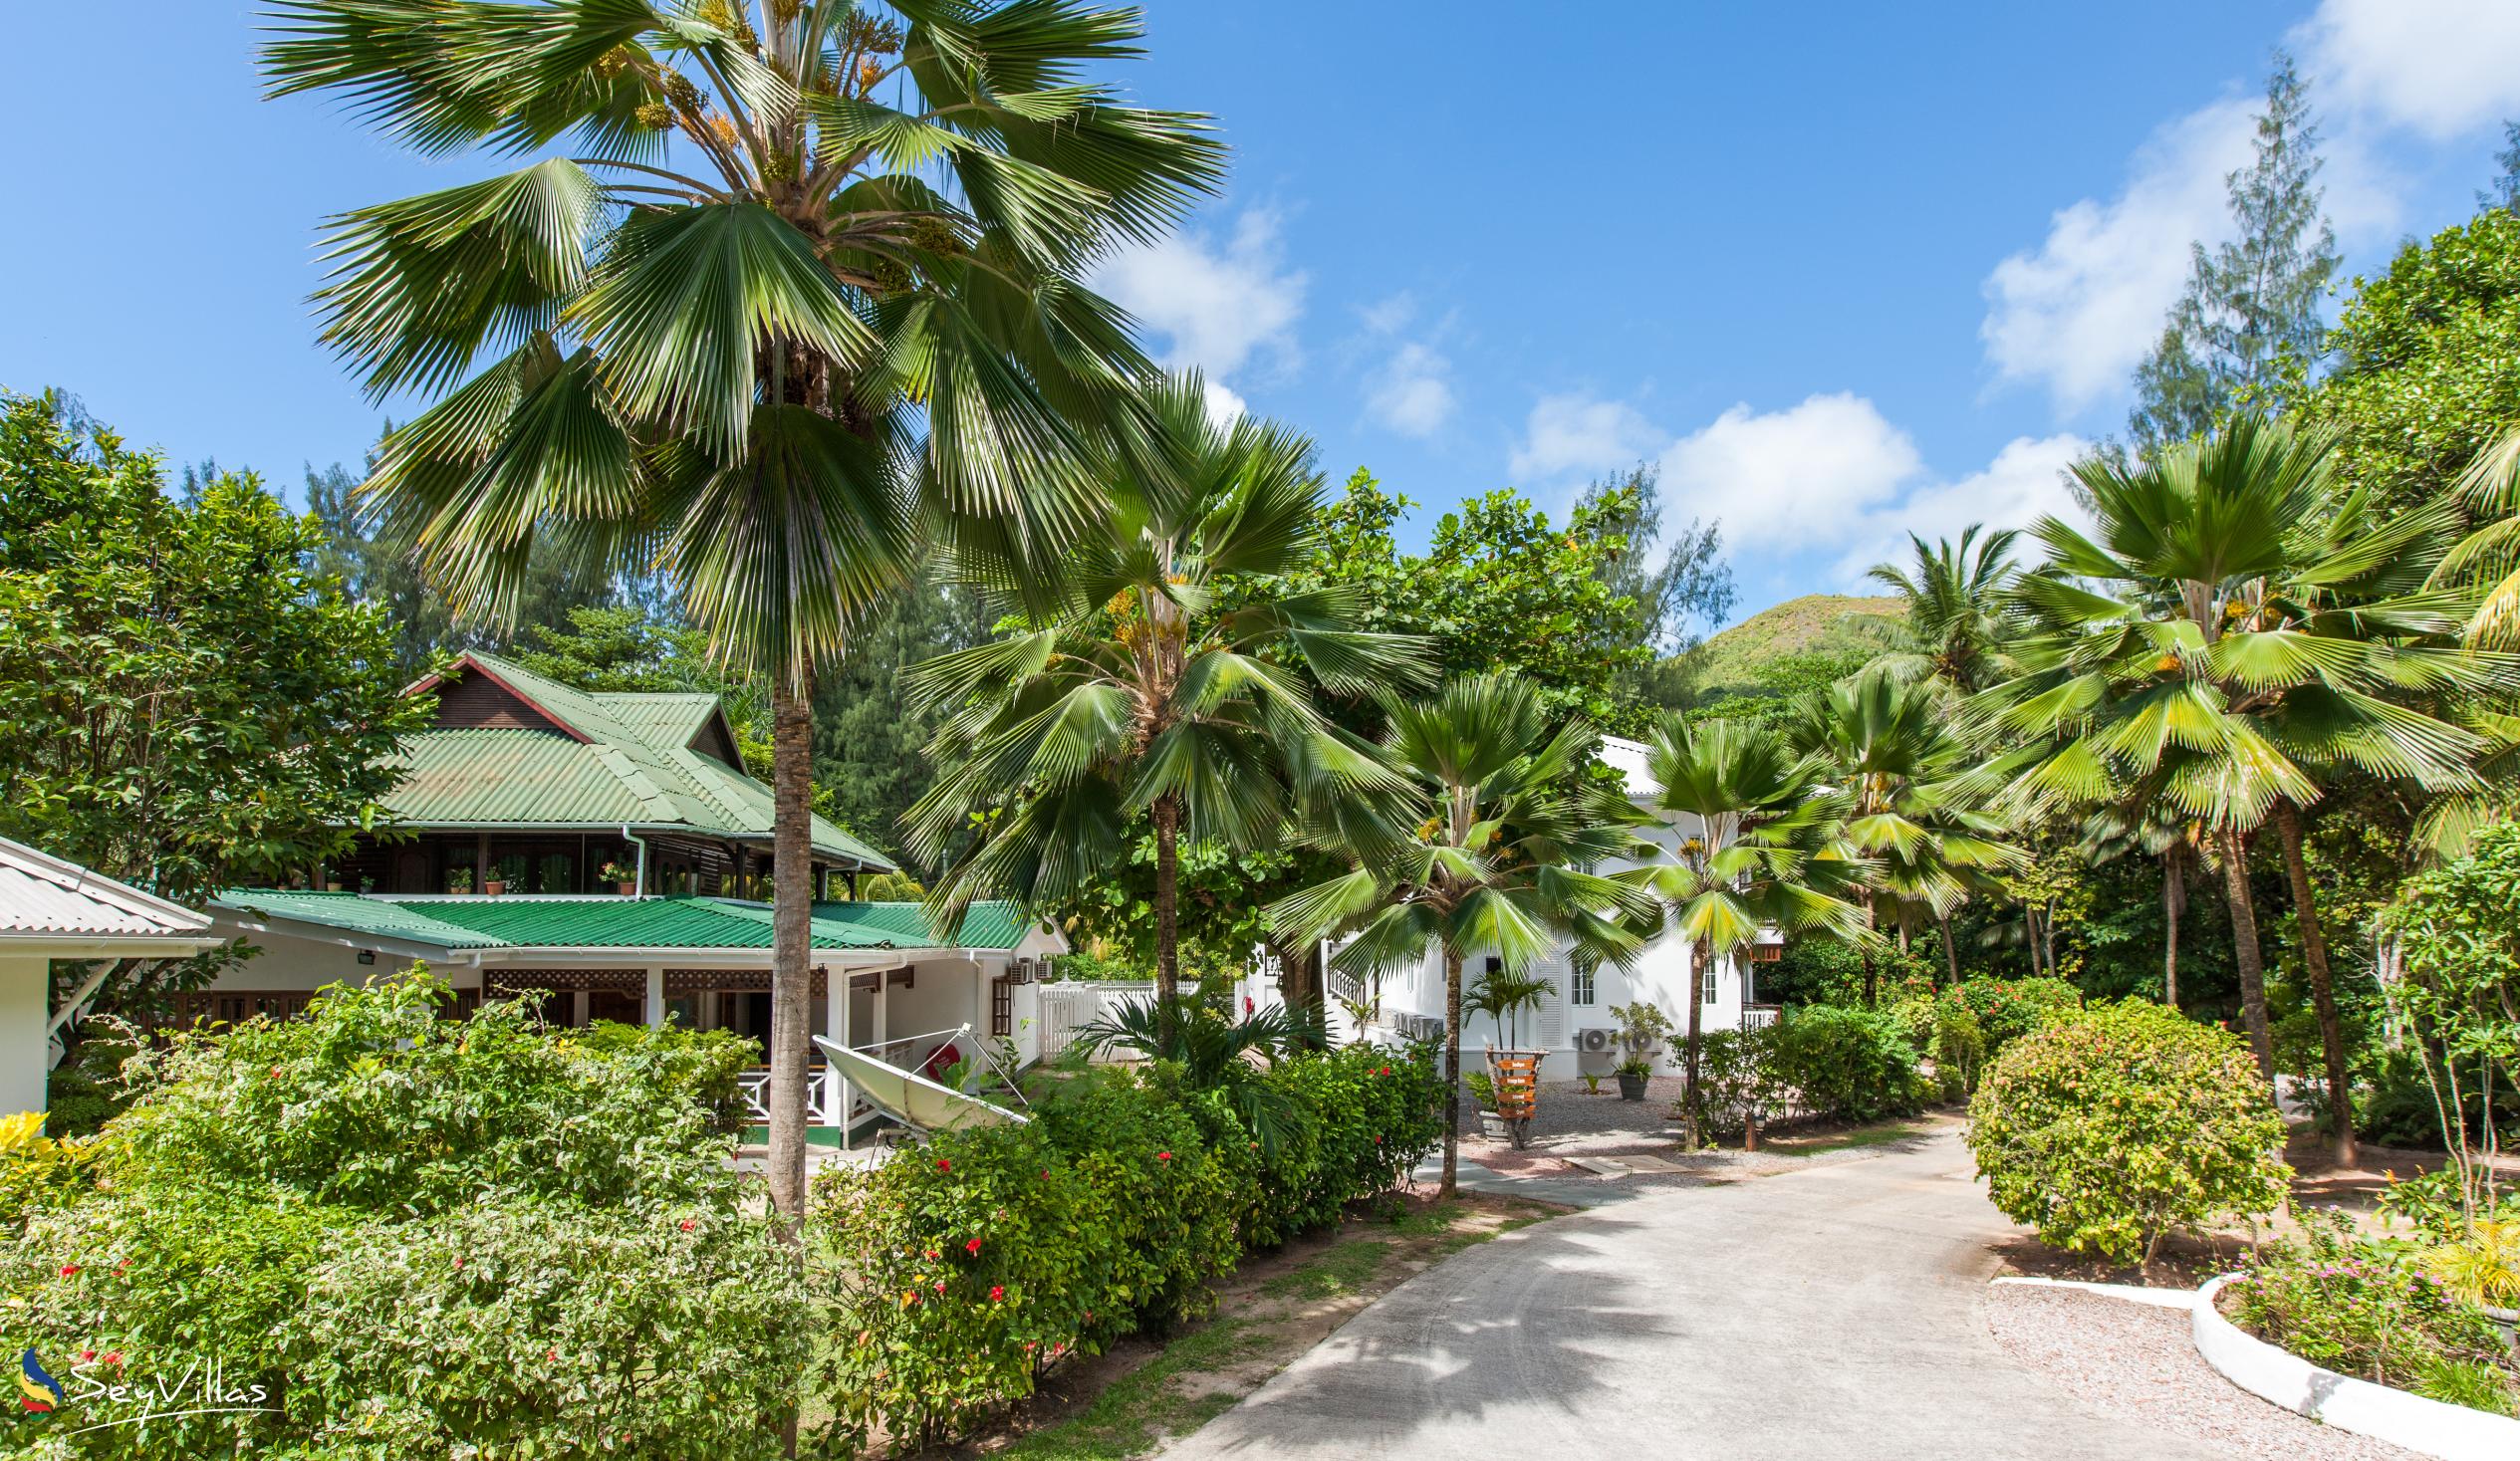 Foto 78: Acajou Beach Resort - Aussenbereich - Praslin (Seychellen)